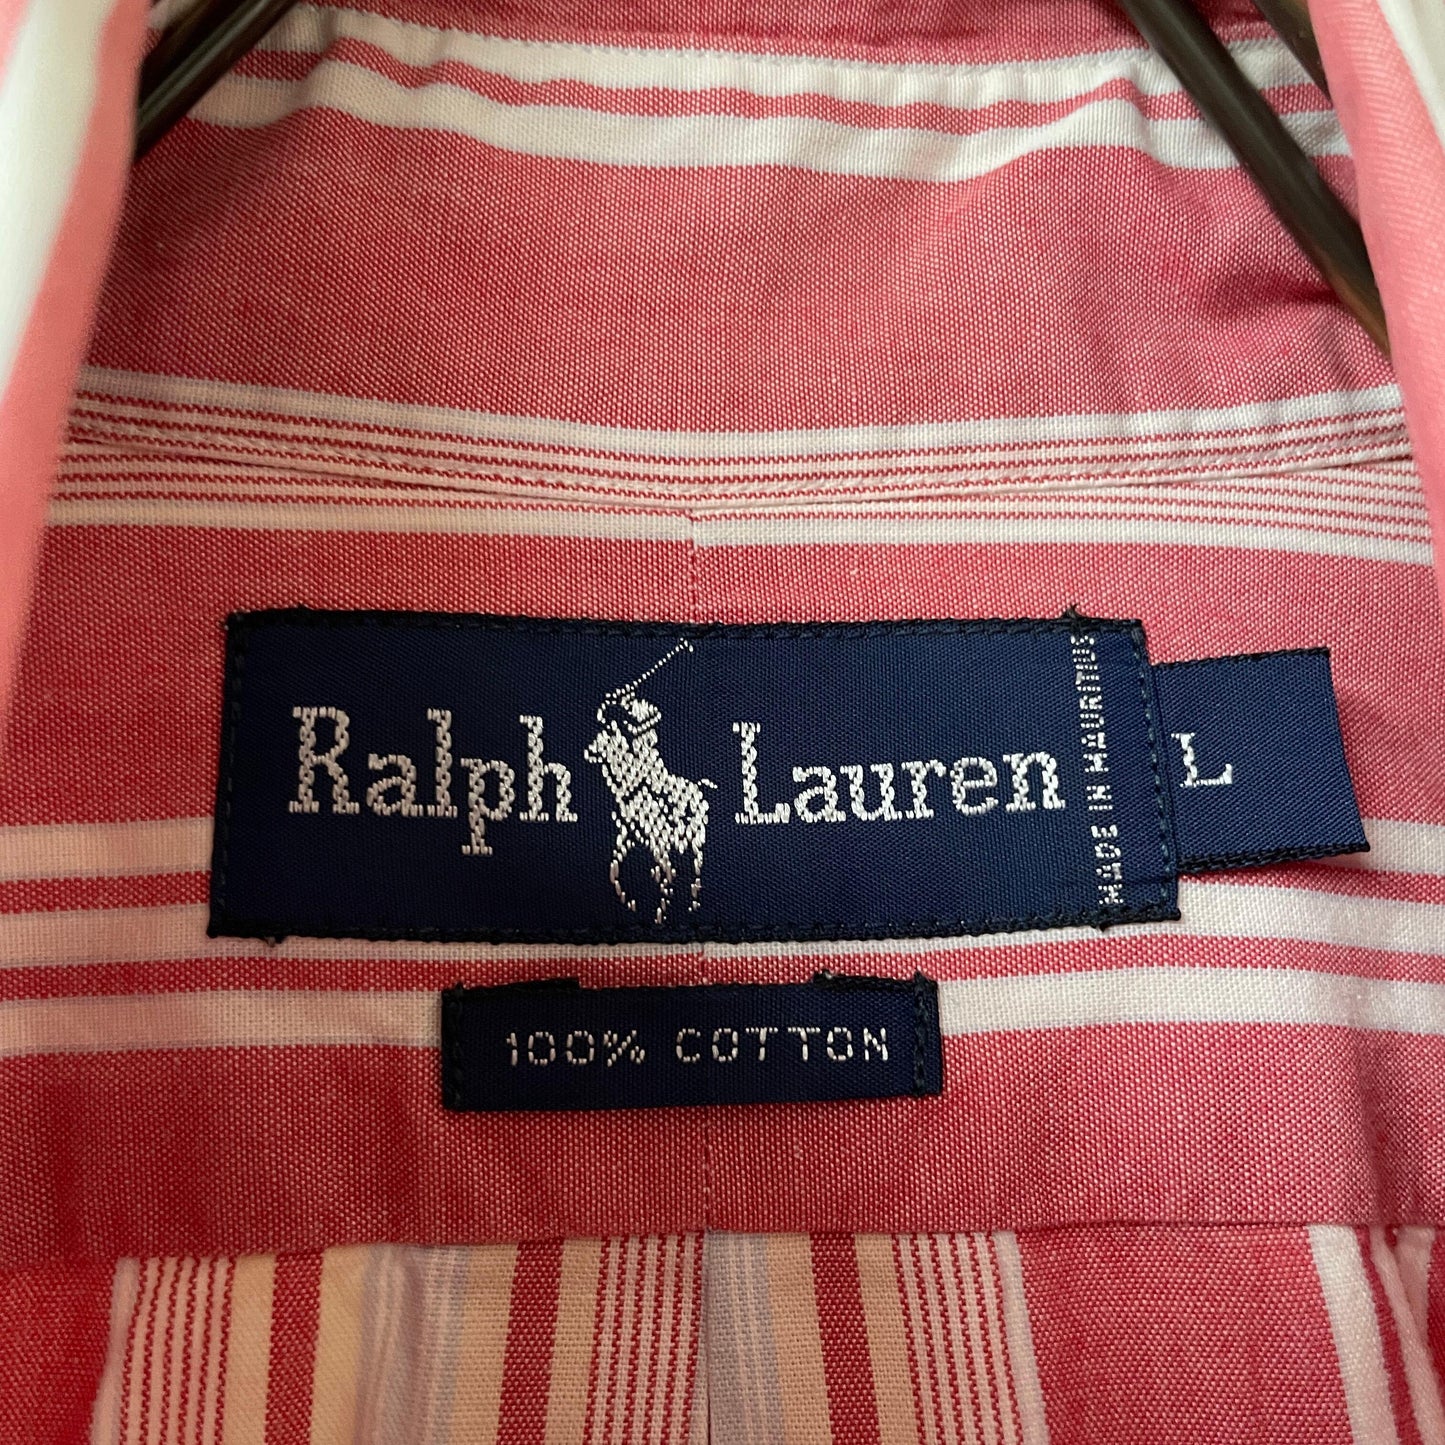 Ralph Lauren striped shirt sum